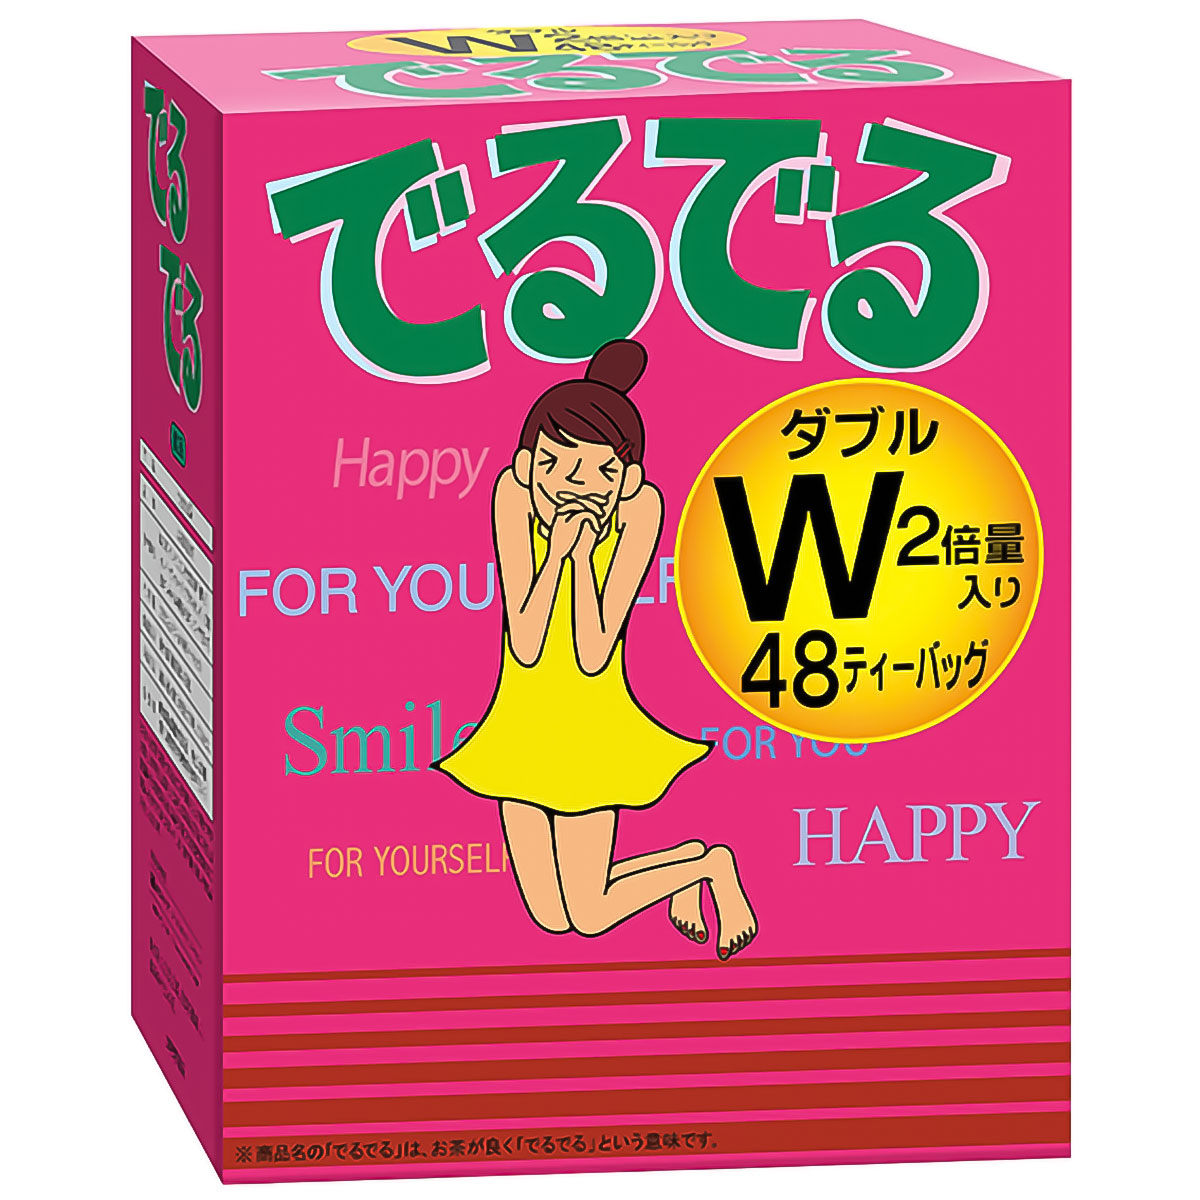 昭和製薬 でるでるW 7.4g 48包入 × 1箱の商品画像